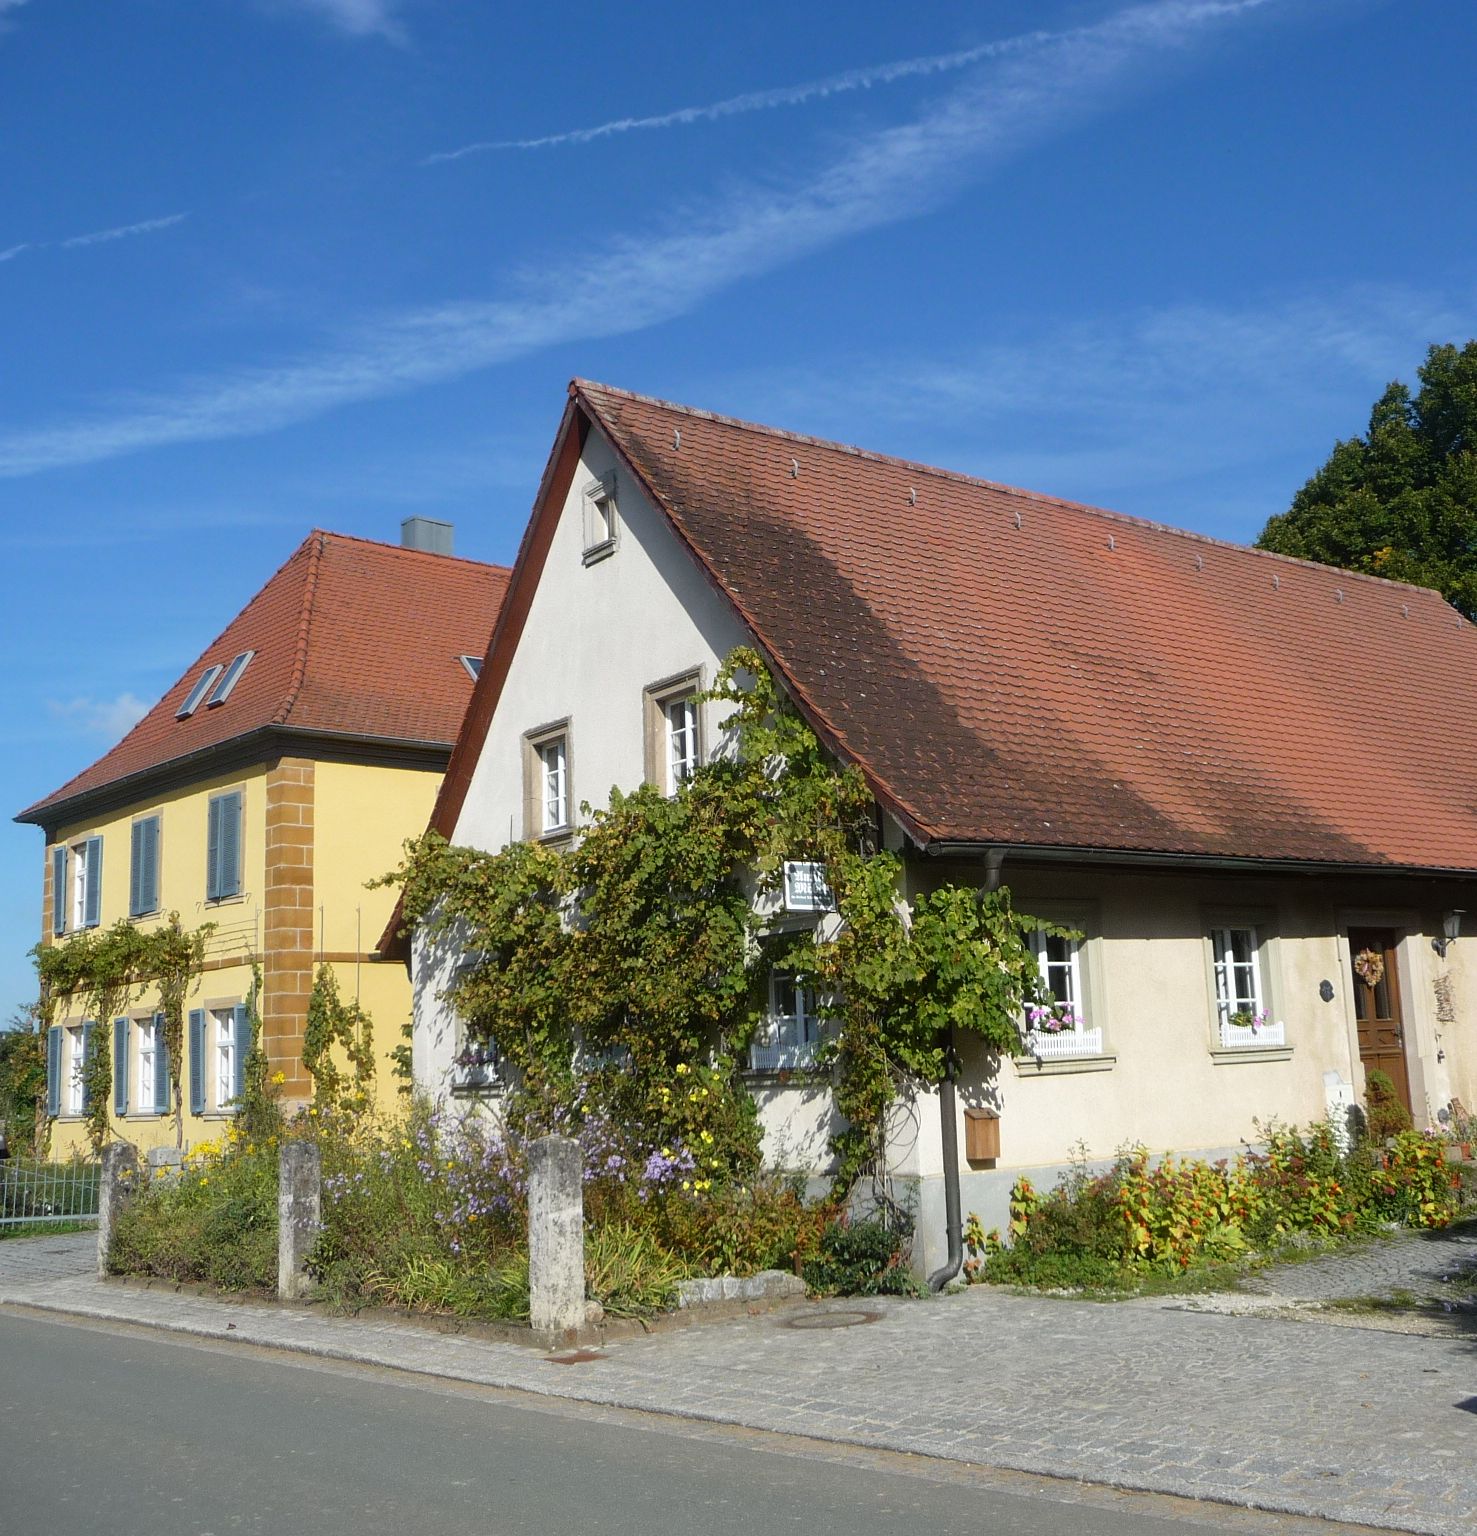 Häuser in Peulendorf - panoramio.jpg.